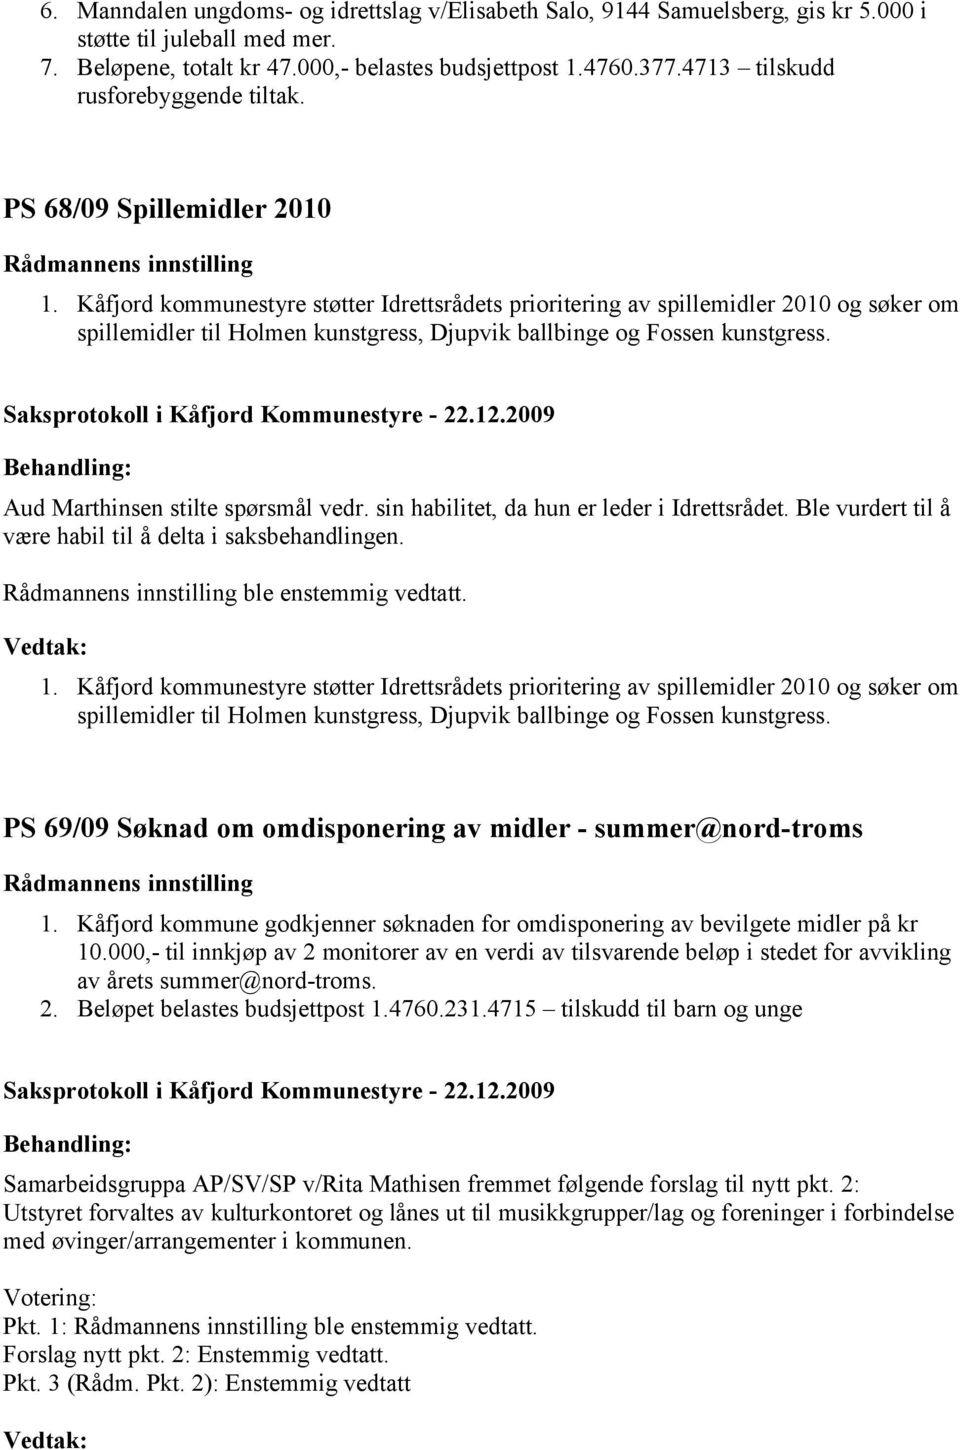 Kåfjord kommunestyre støtter Idrettsrådets prioritering av spillemidler 2010 og søker om spillemidler til Holmen kunstgress, Djupvik ballbinge og Fossen kunstgress.